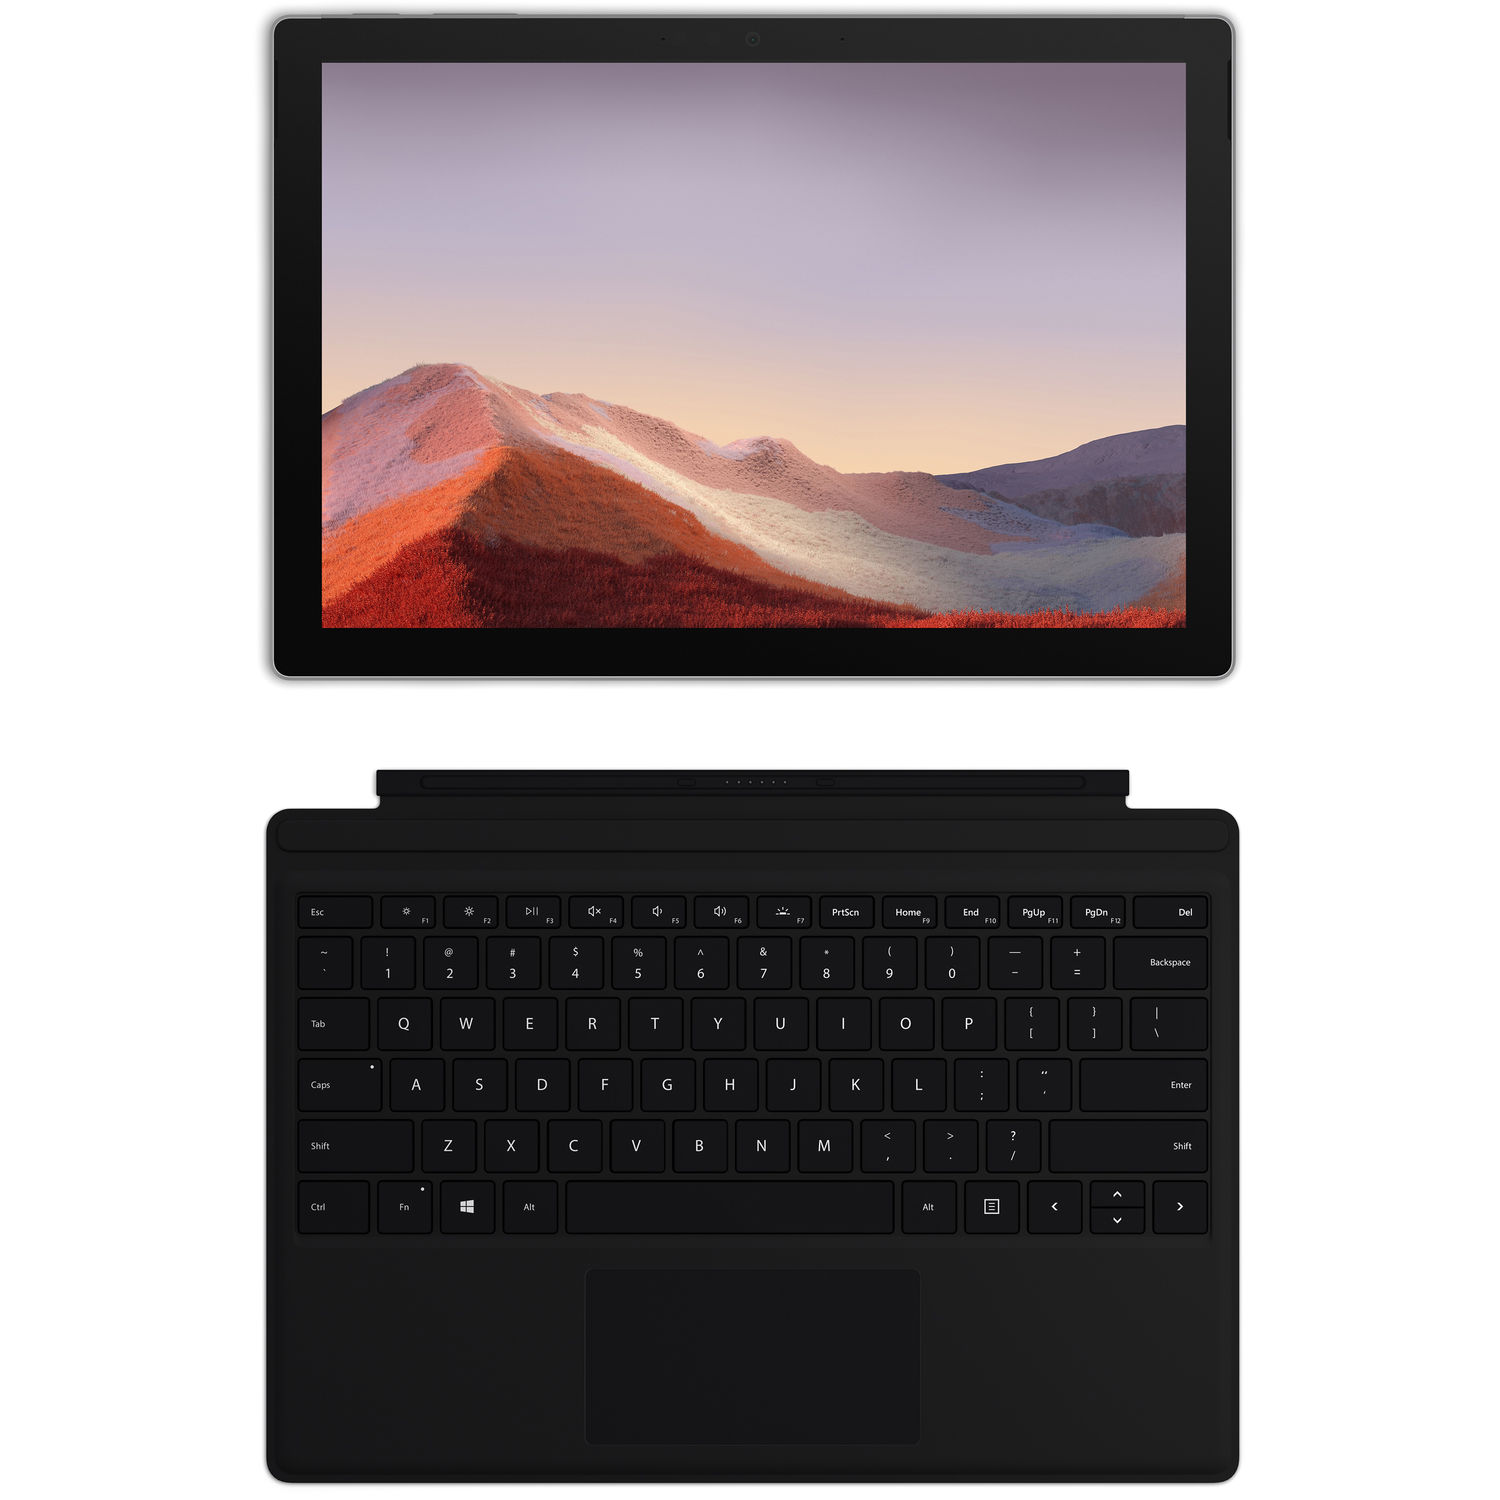 فروش نقدی و اقساطی تبلت مایکروسافت مدل Surface Pro 7 Plus - F ظرفیت 512 گیگابایت به همراه کیبورد Black Type Cover